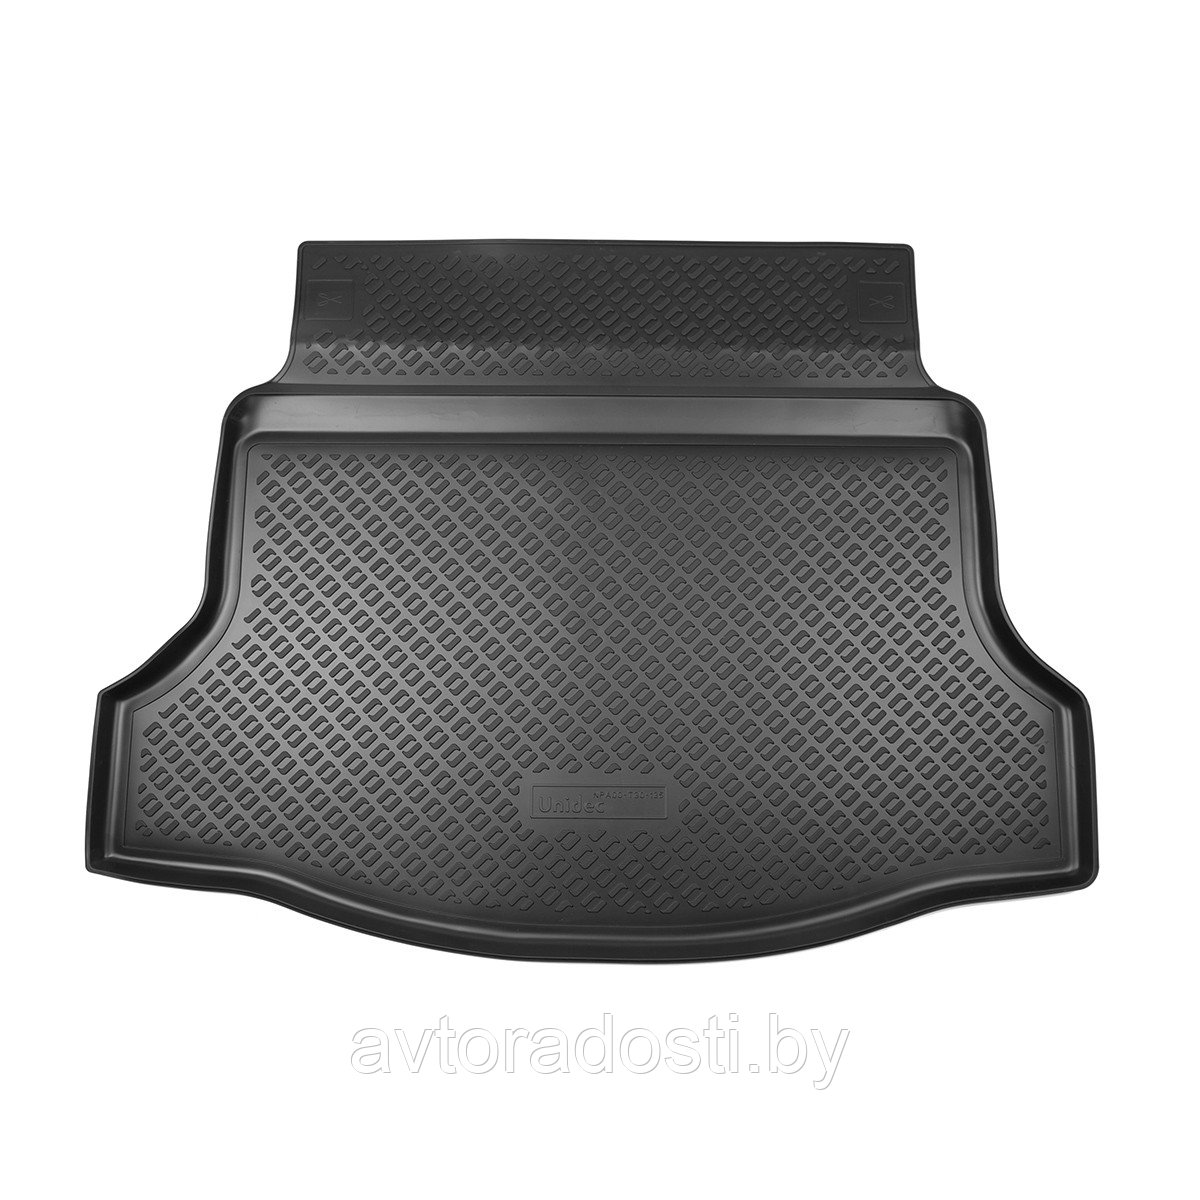 Коврик в багажник для Honda Civic X (2015-) хетчбек / без сабвуфера / Хонда Цивик (Norplast)